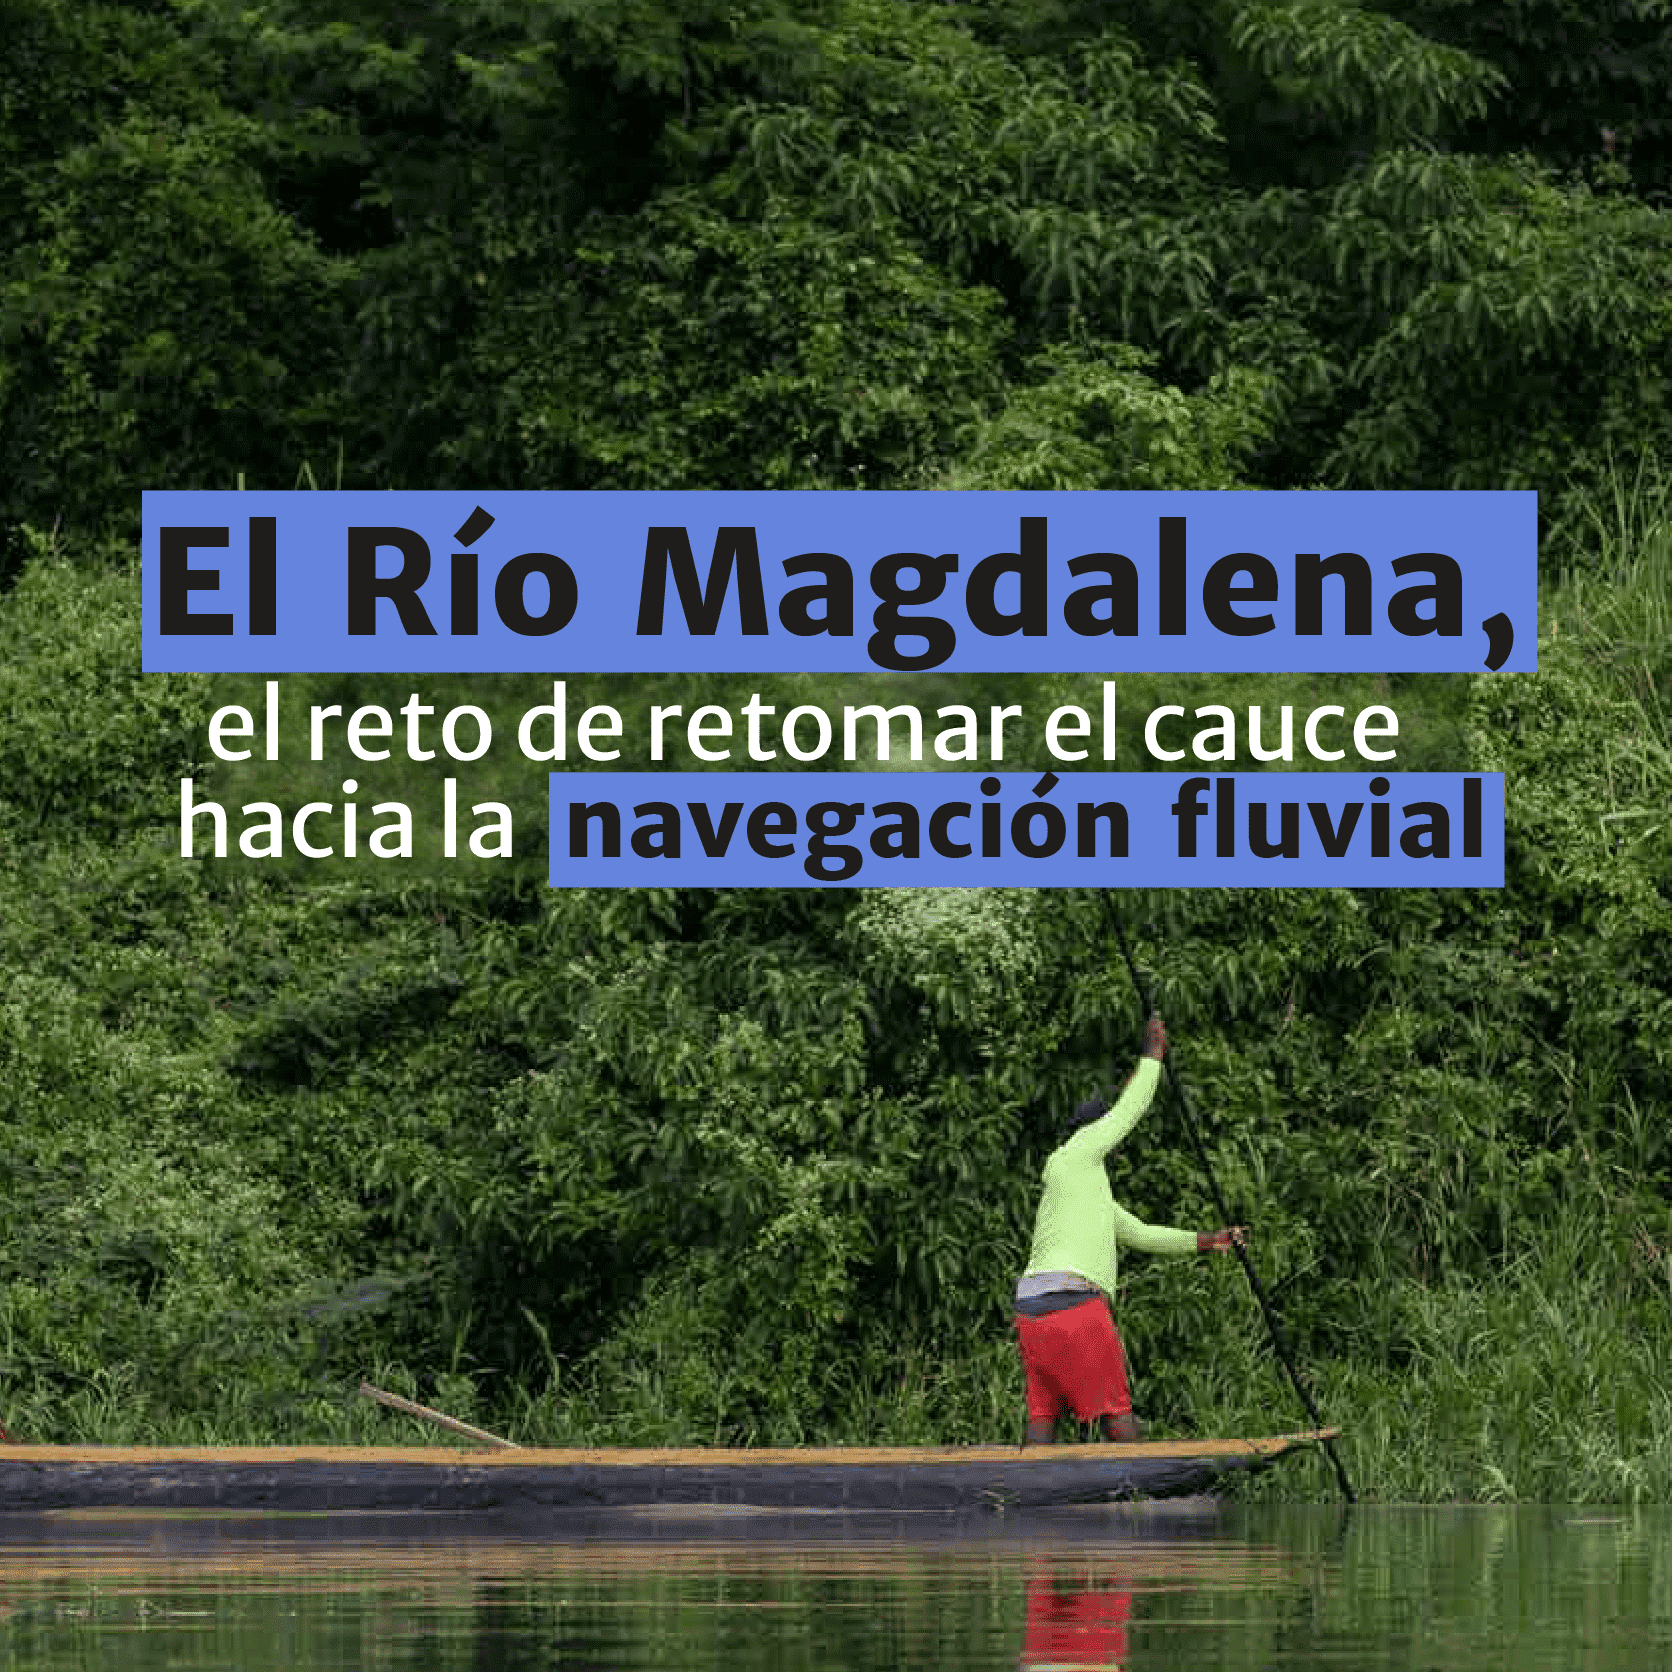 El Río Magdalena, el reto de retomar el cauce hacia la navegación fluvial